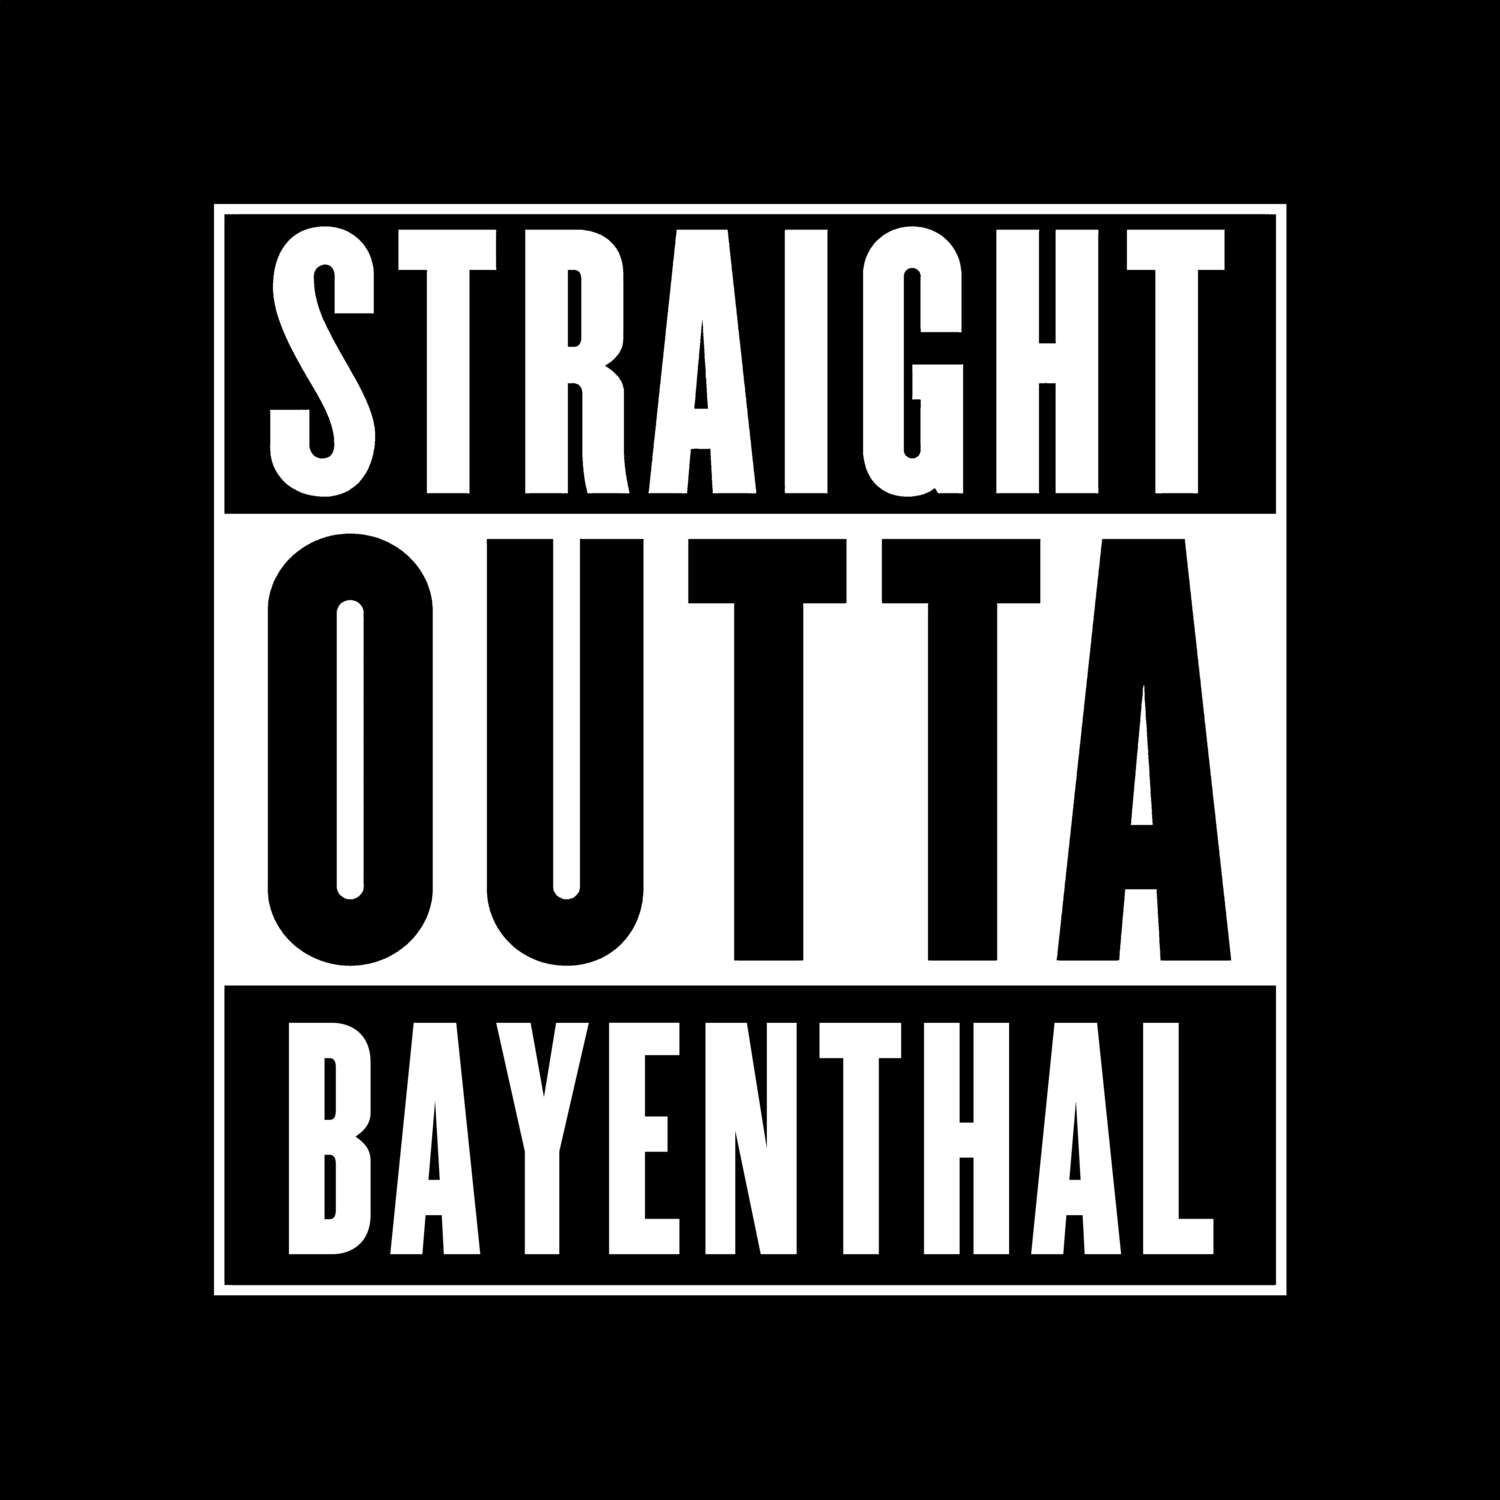 Bayenthal T-Shirt »Straight Outta«